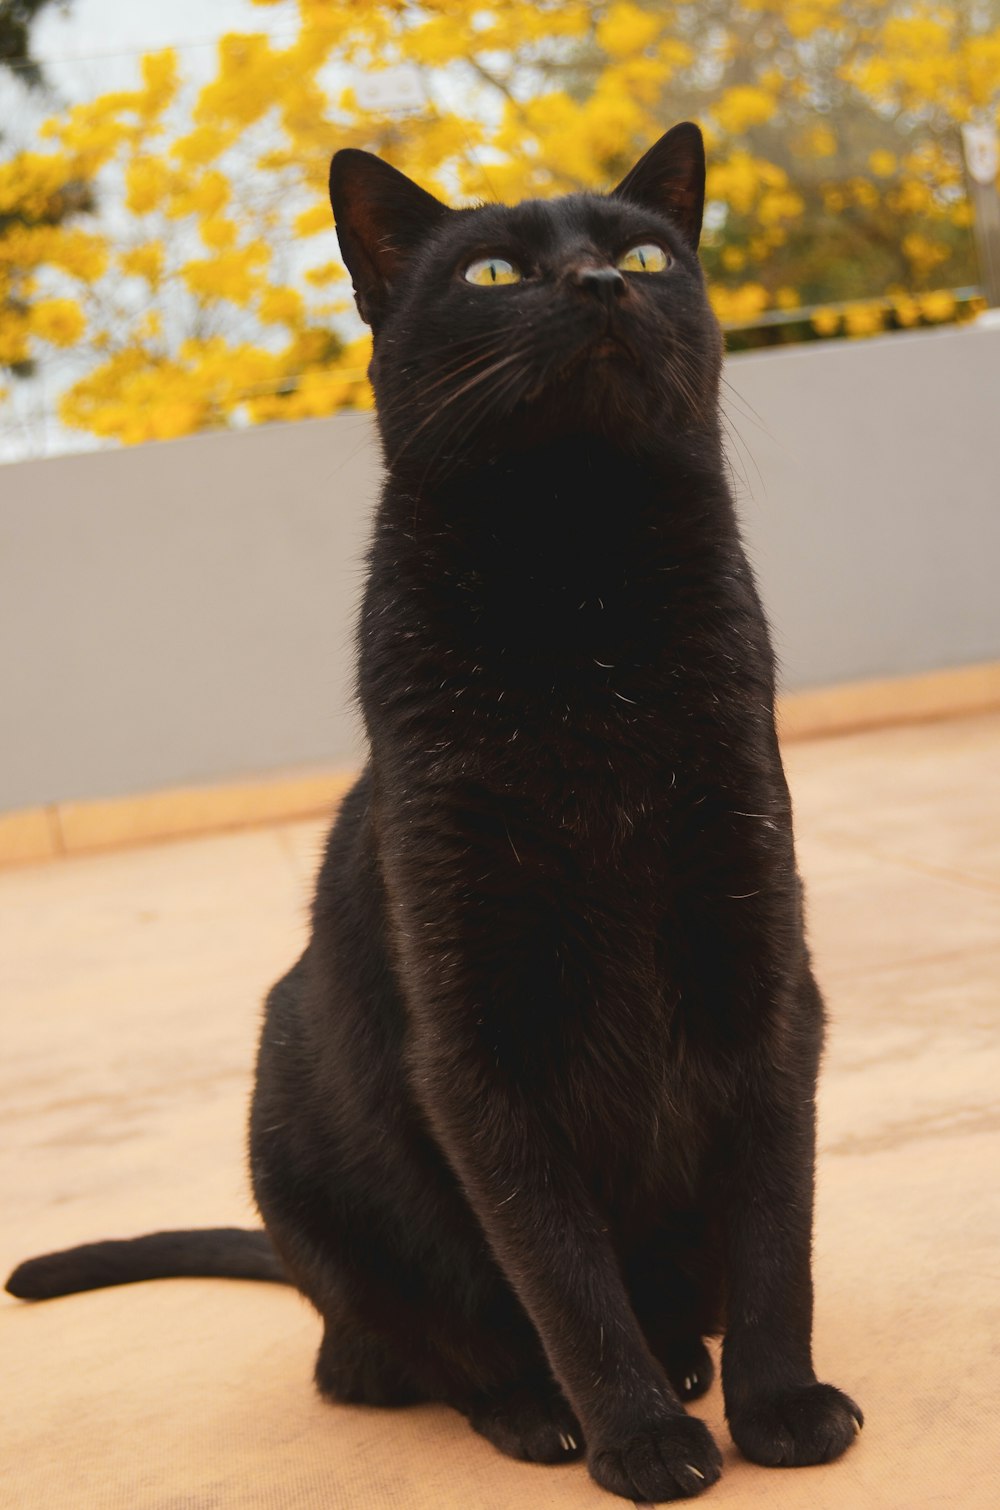 chat noir sur sol blanc